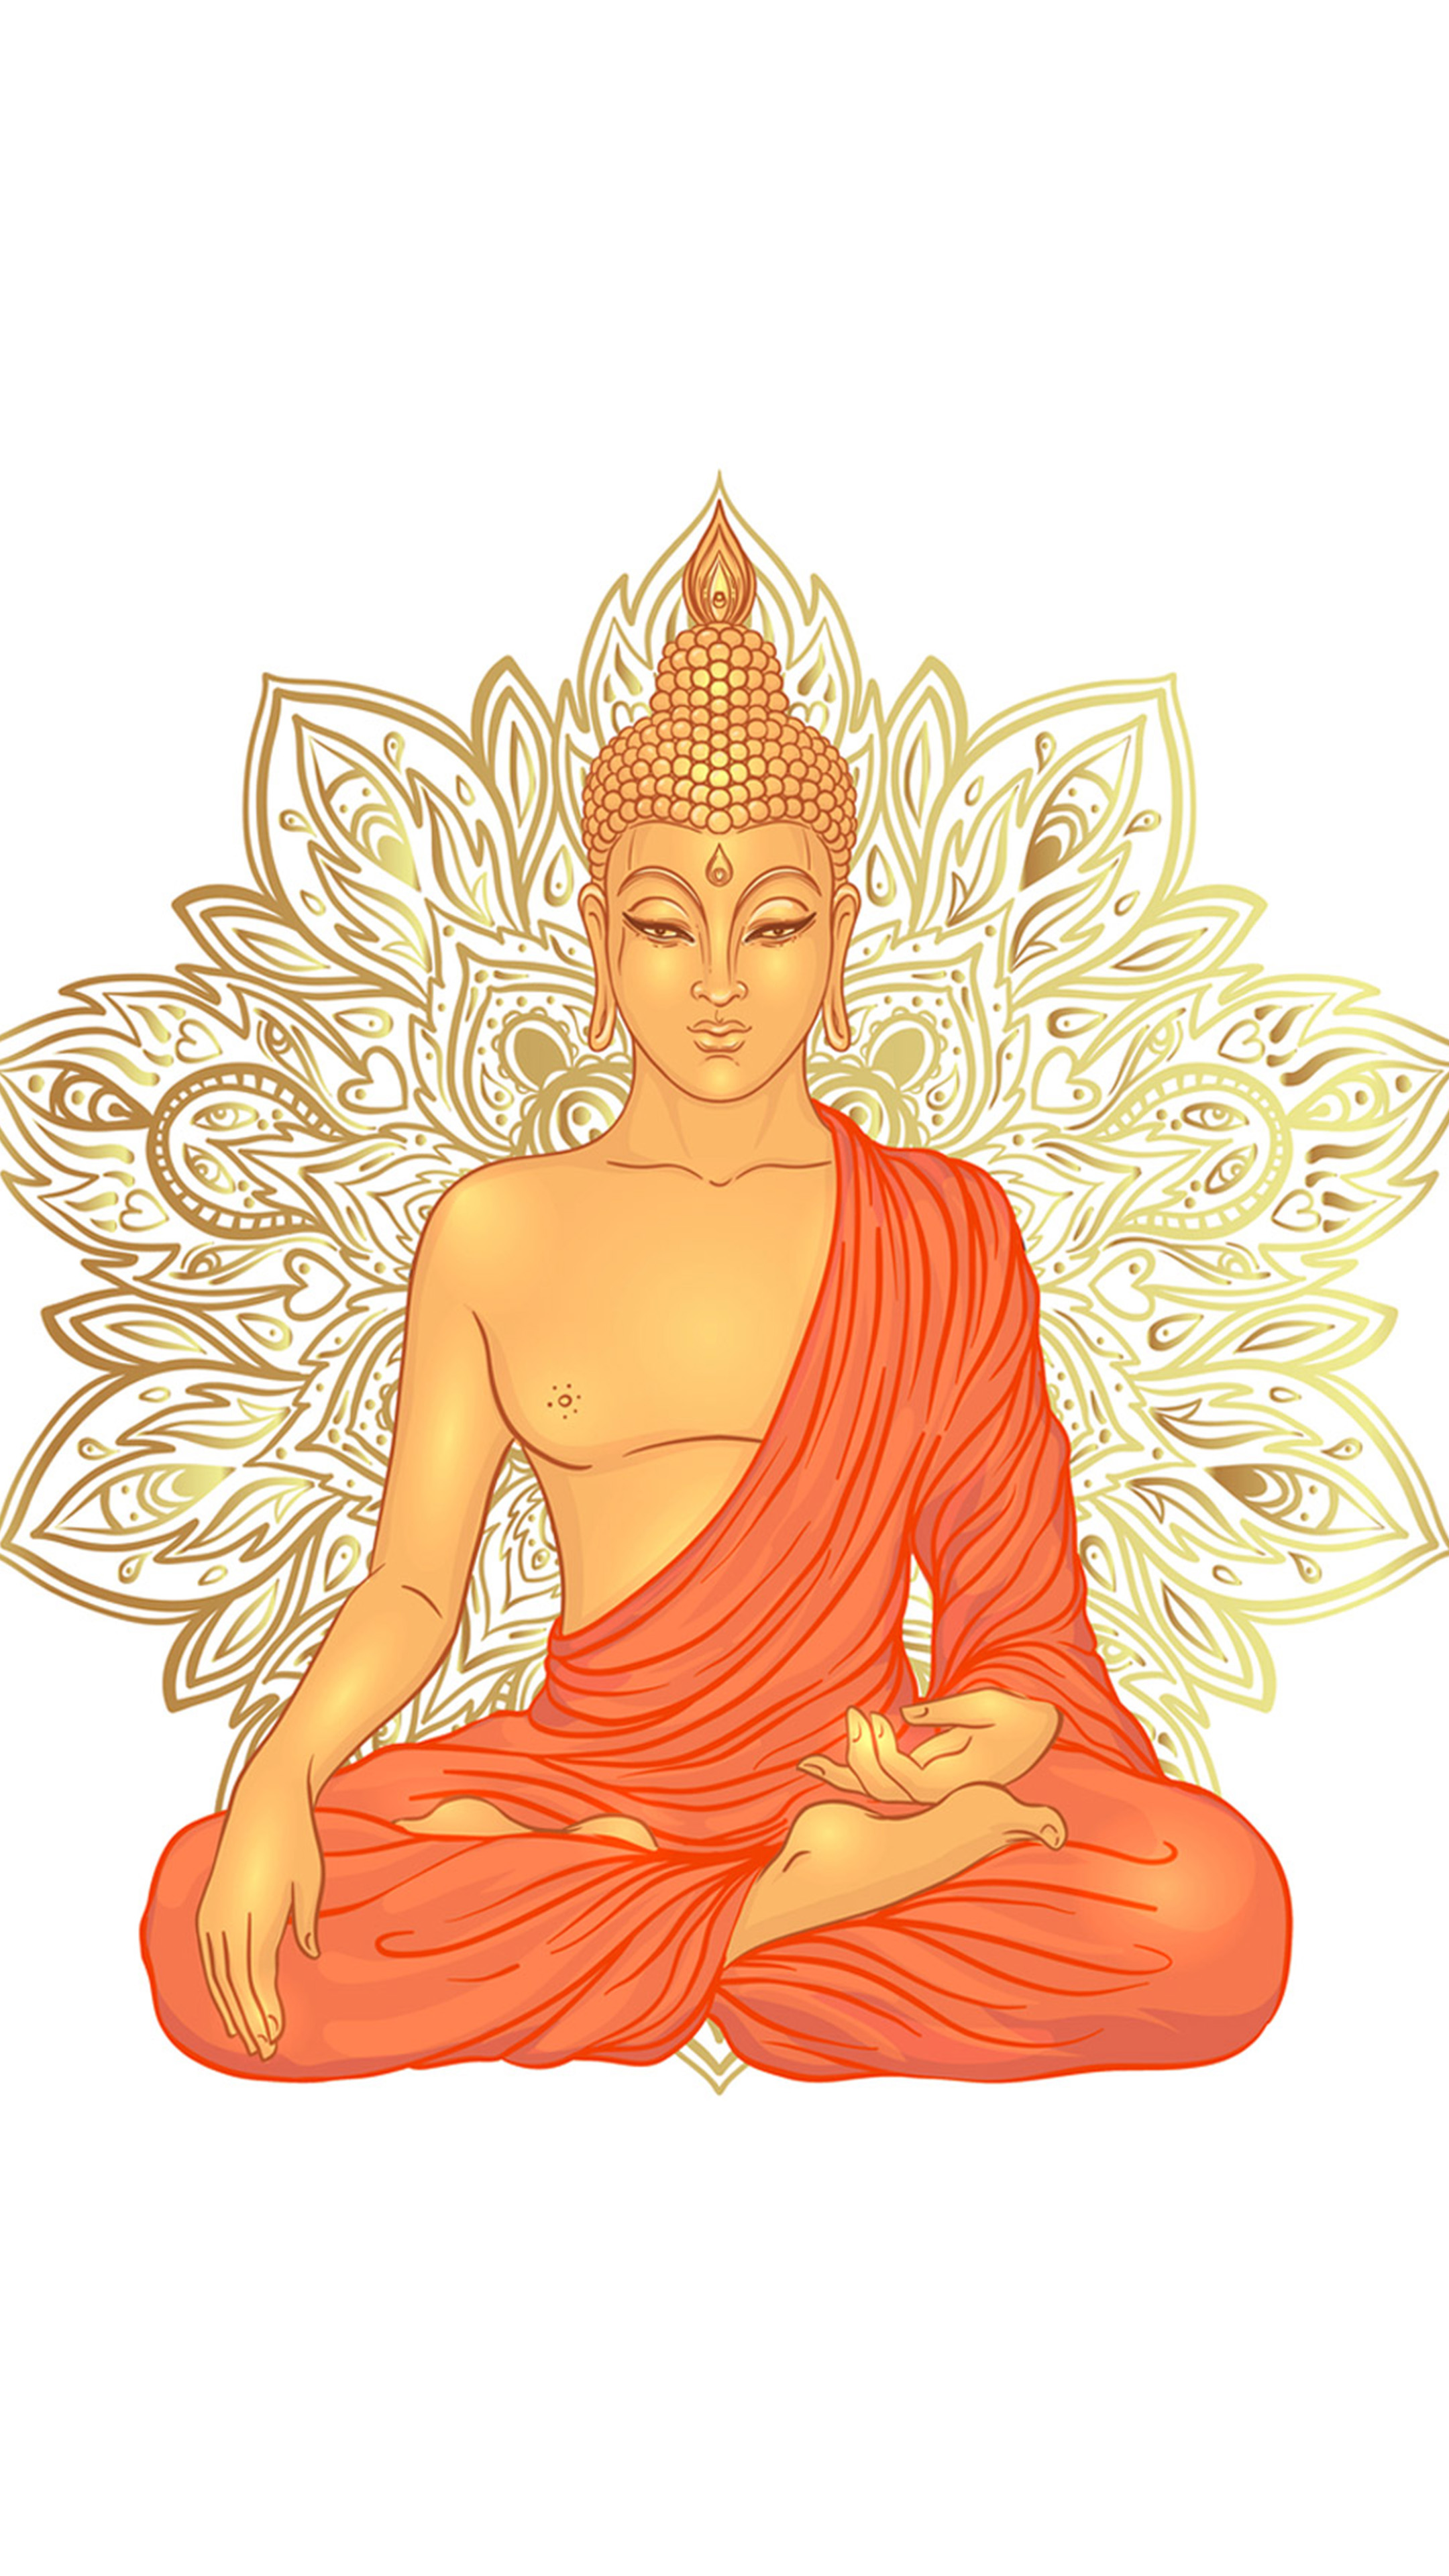 عکس پروفایل بودا برای شبکه های اجتماعی با کیفیت HD